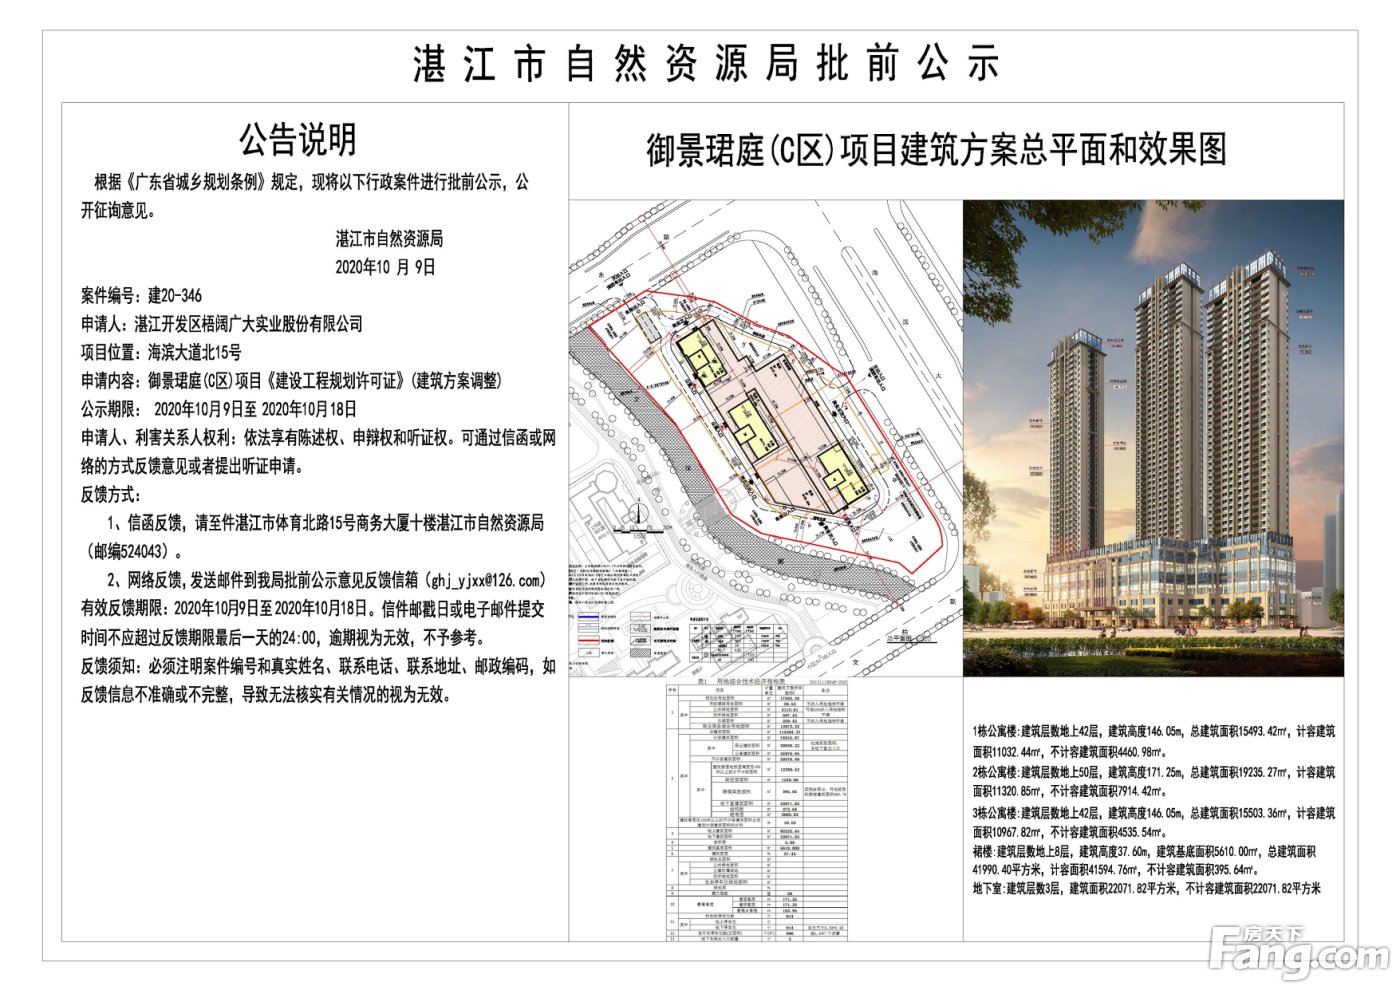 50层超高公寓楼！湛江万达广场旁这个公寓项目已经建到了7层楼